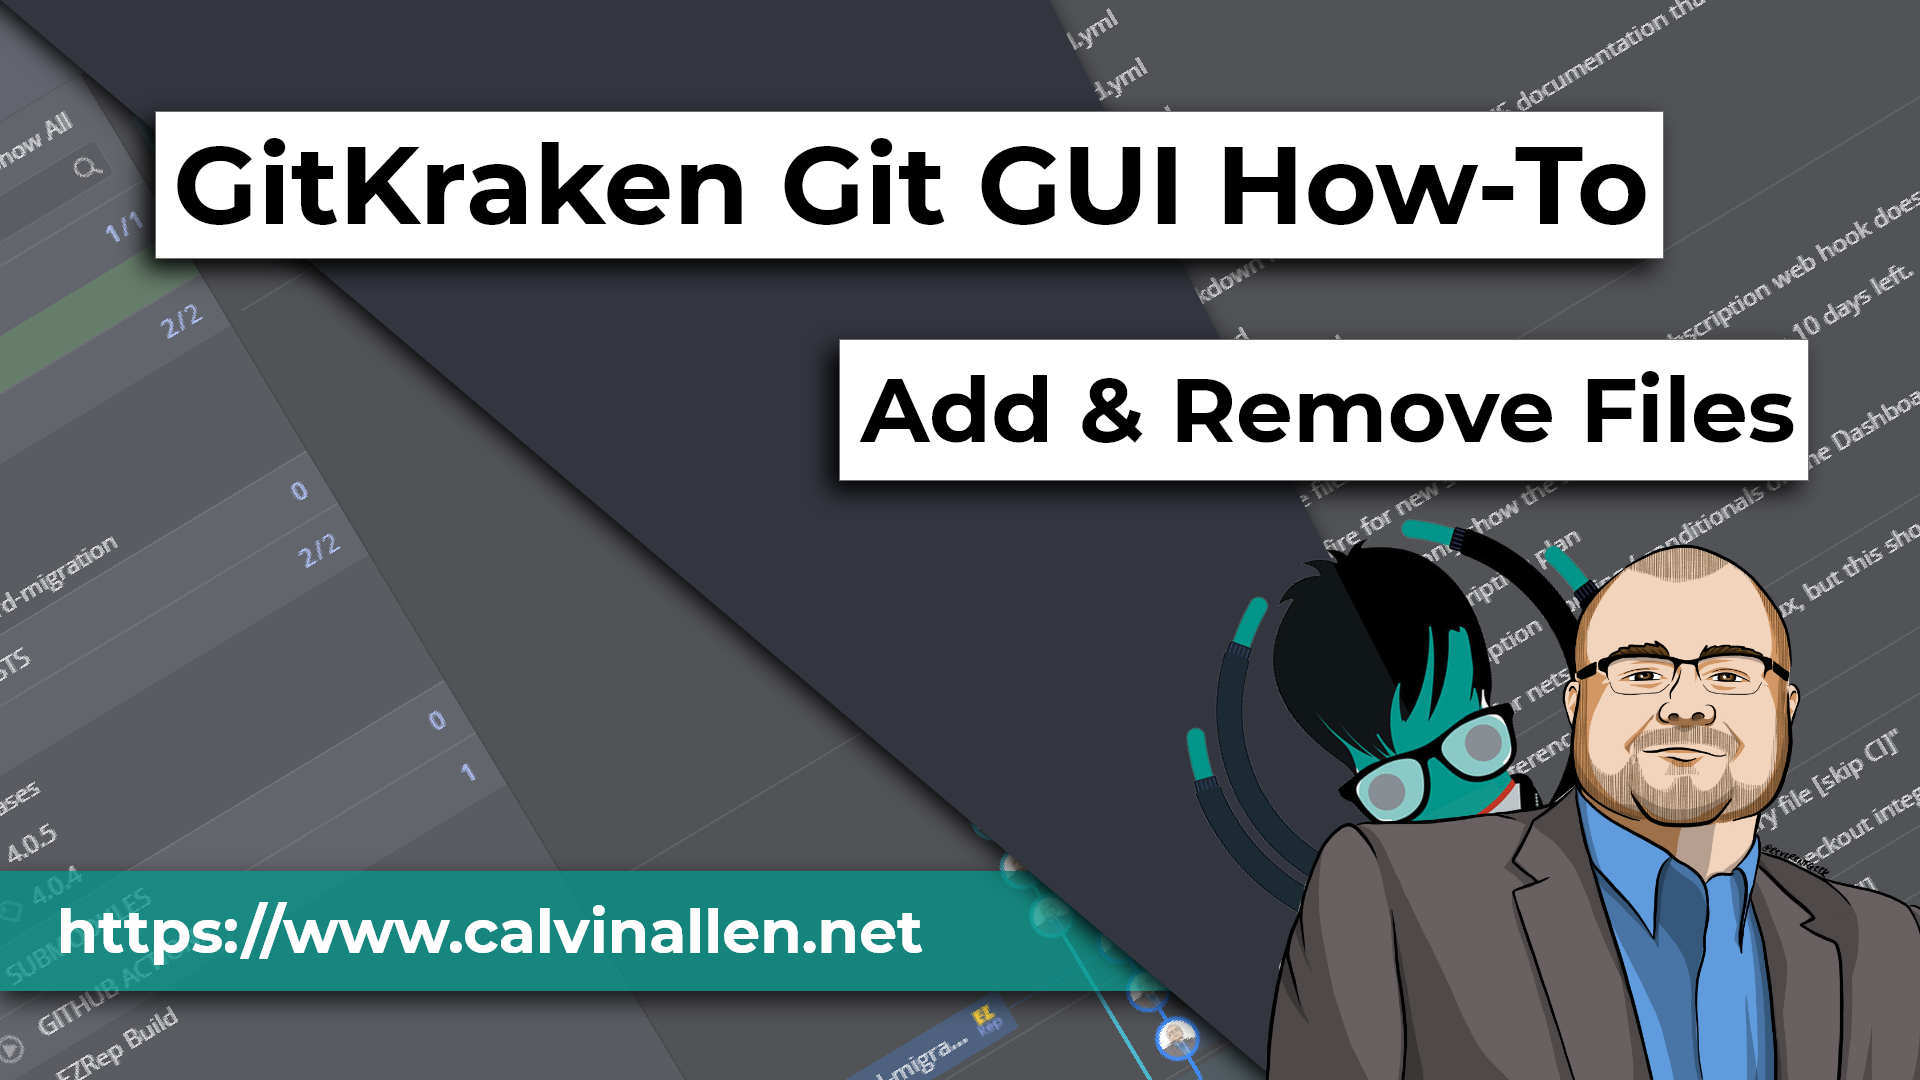 GitKraken Git GUI How-To: Add & Remove Files